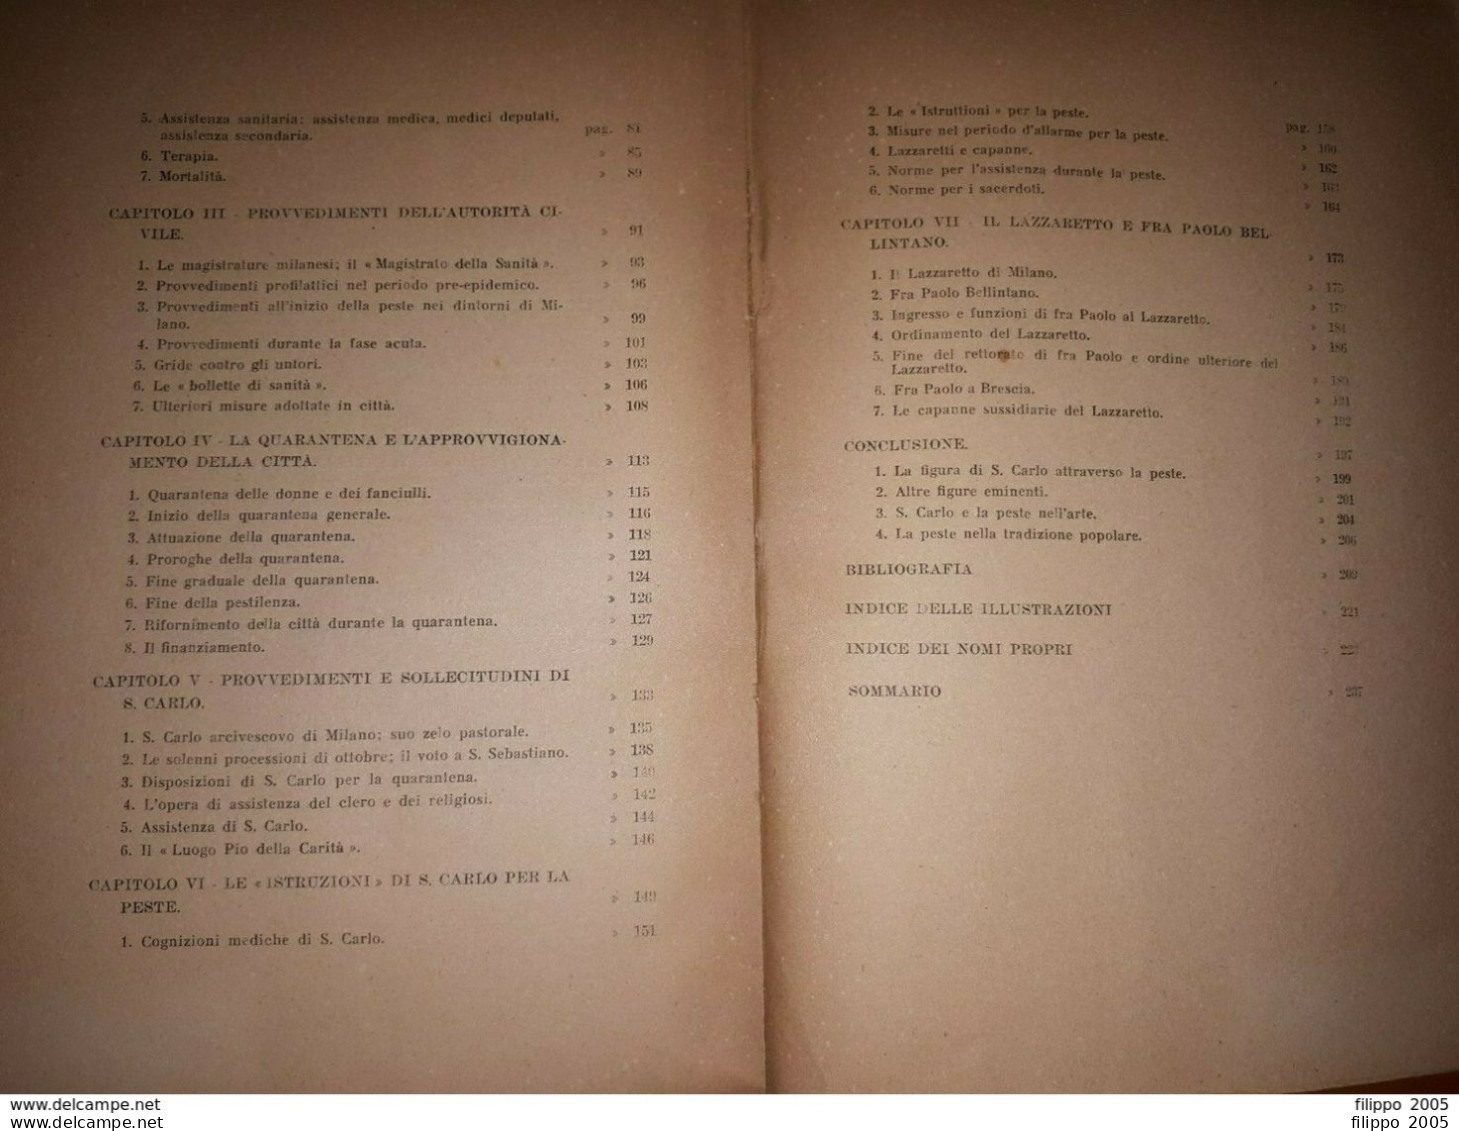 1944 - LA PESTE DI SAN CARLO VISTA DA UN MEDICO - LA CAVA - MEDICINA - LIBRO - Medecine, Psychology